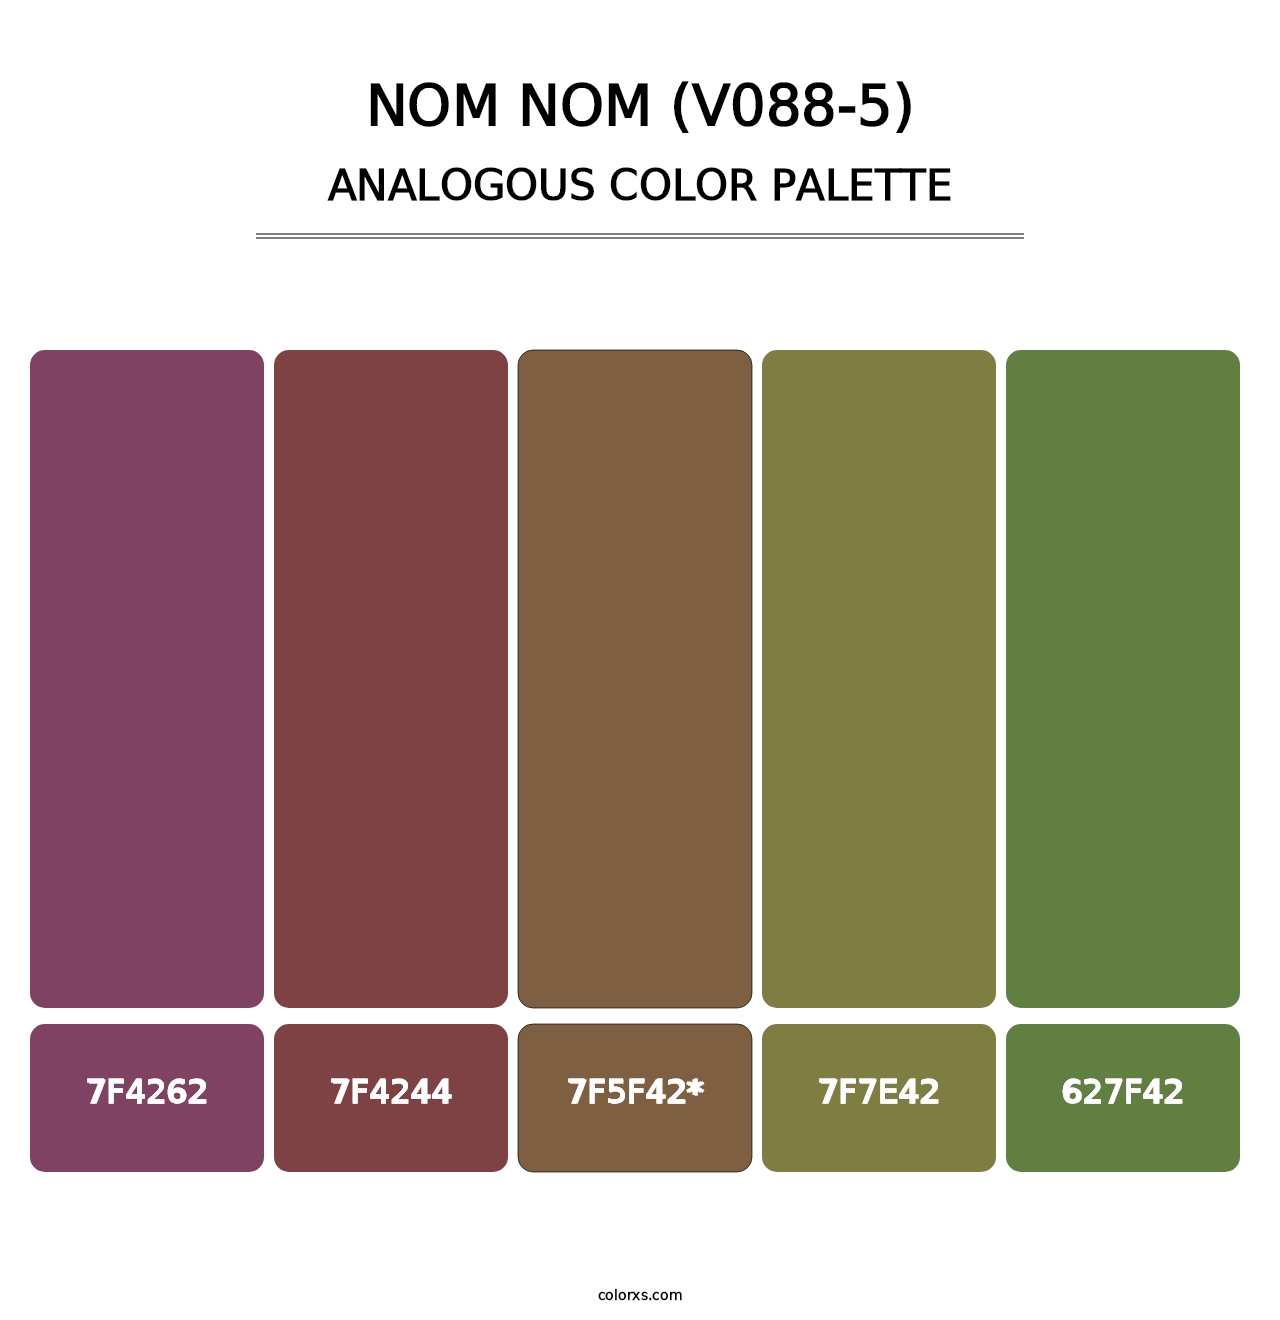 Nom Nom (V088-5) - Analogous Color Palette